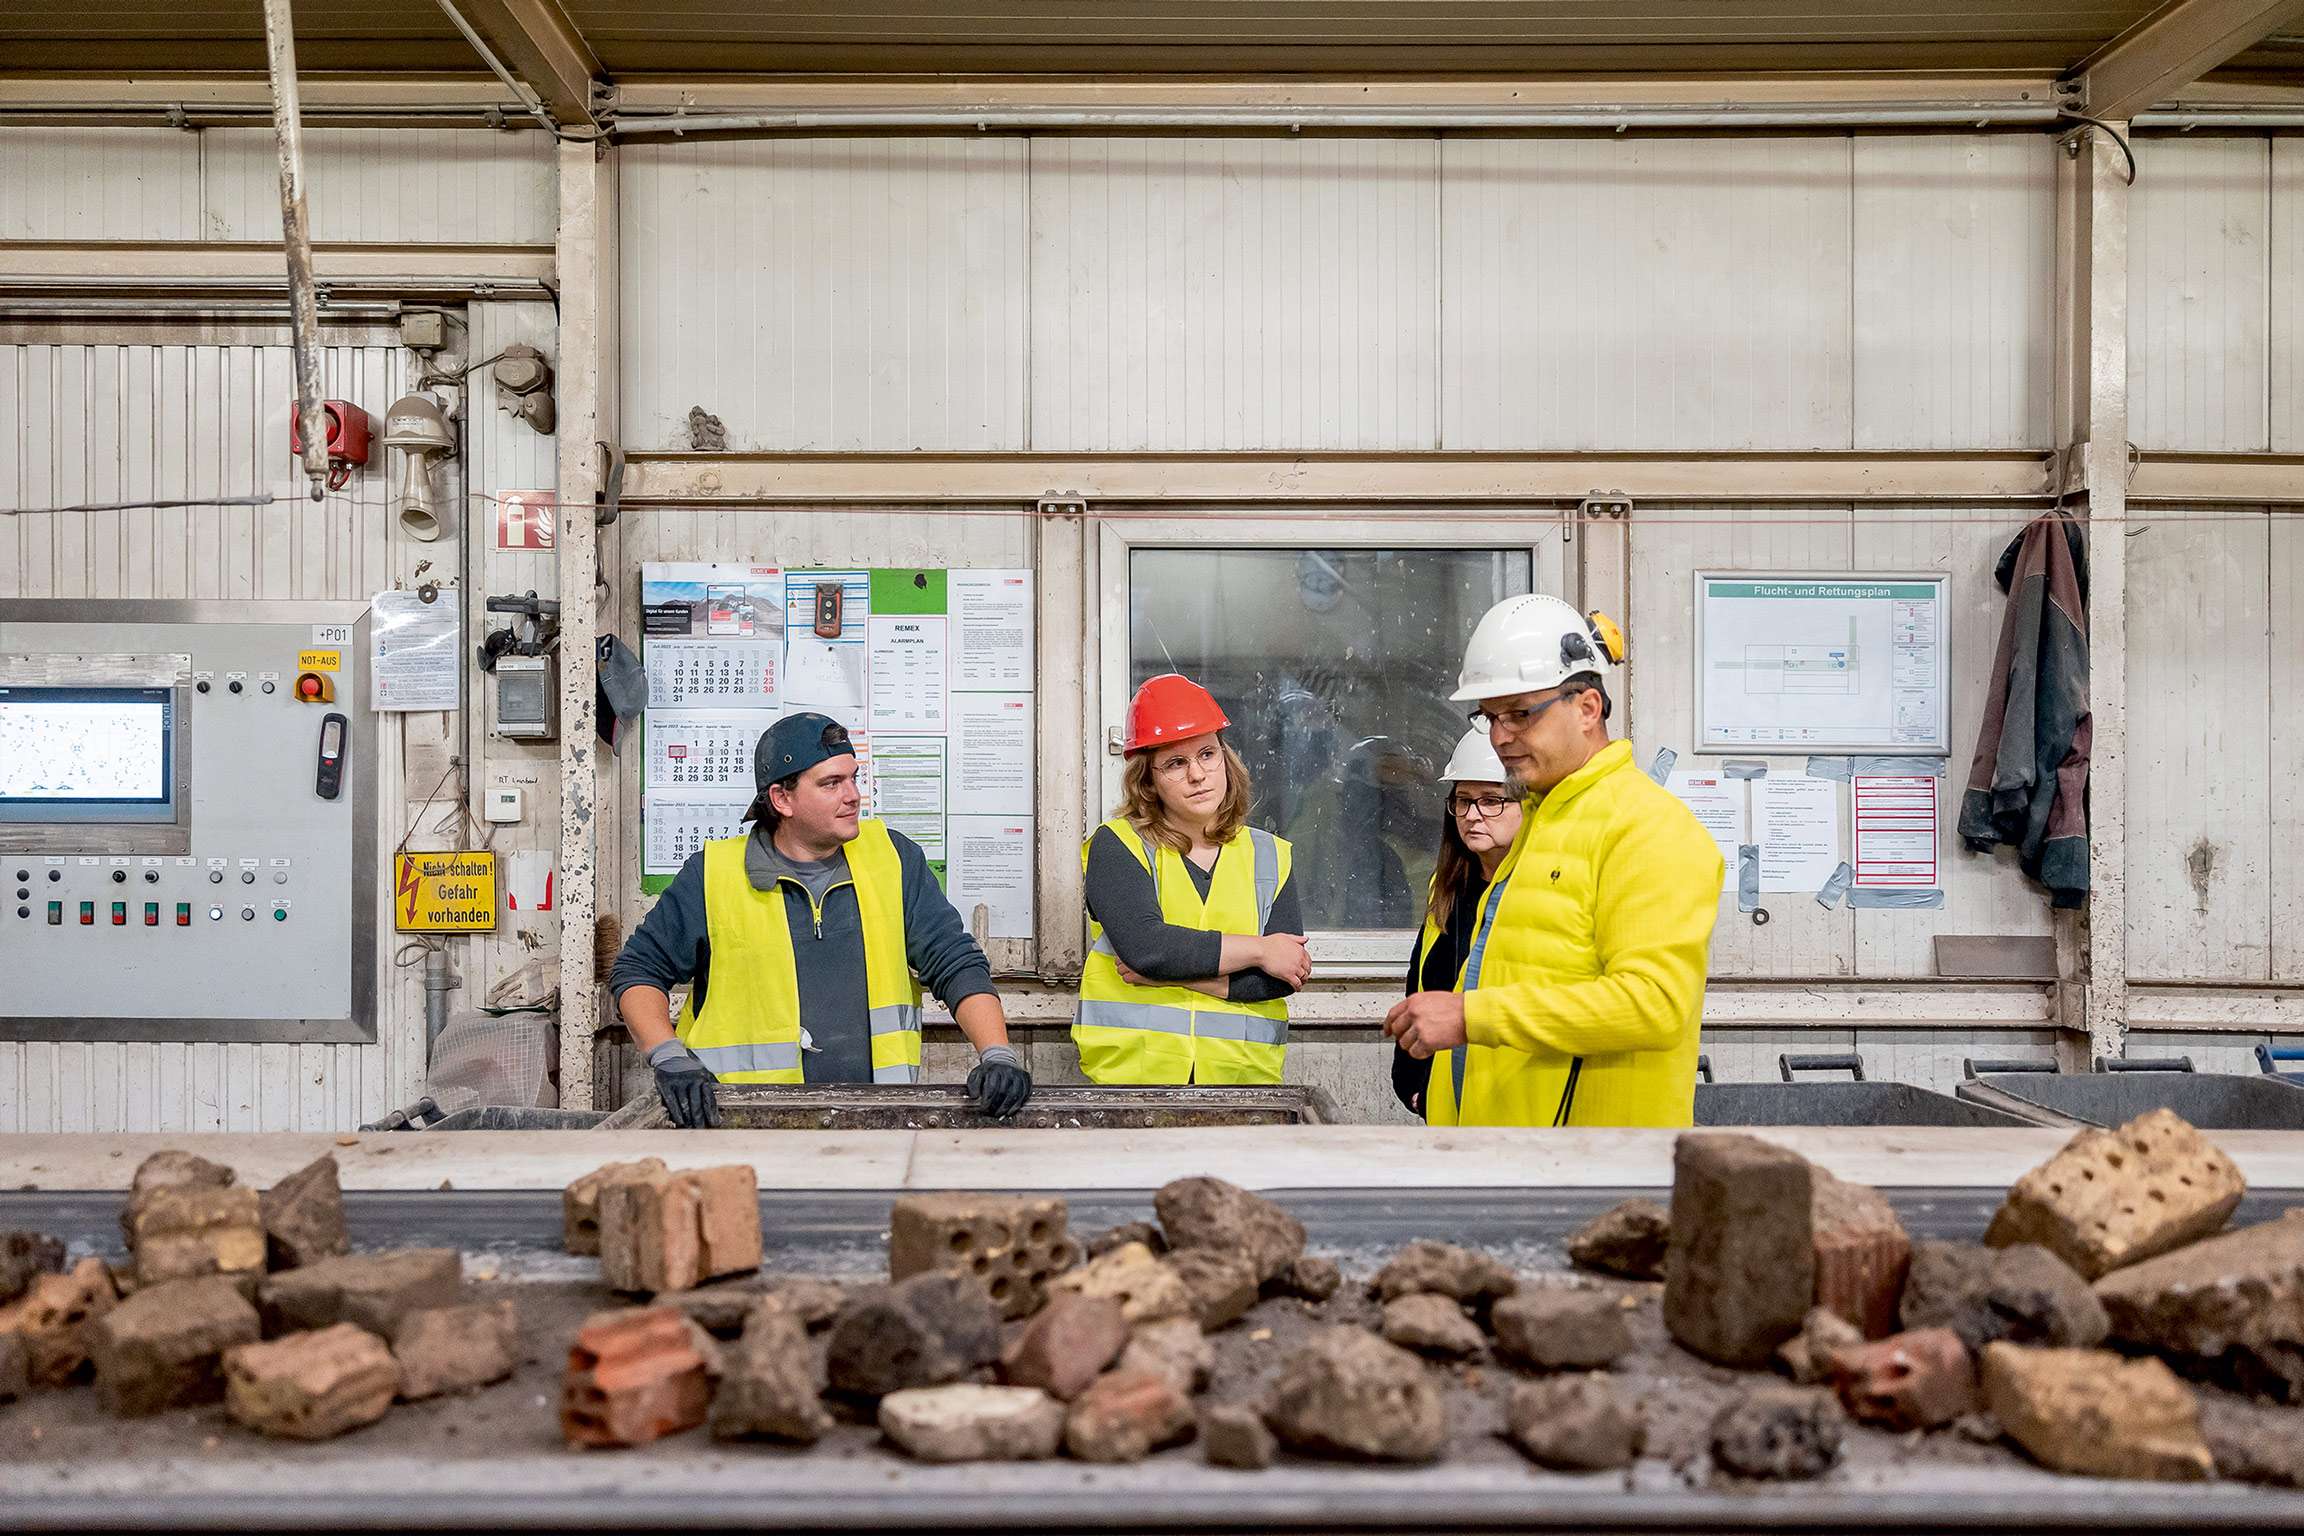 Bild von Roland Baege: VdW Mitarbeiter bei der Besichtigung der Anlage stehen vor einem Förderband